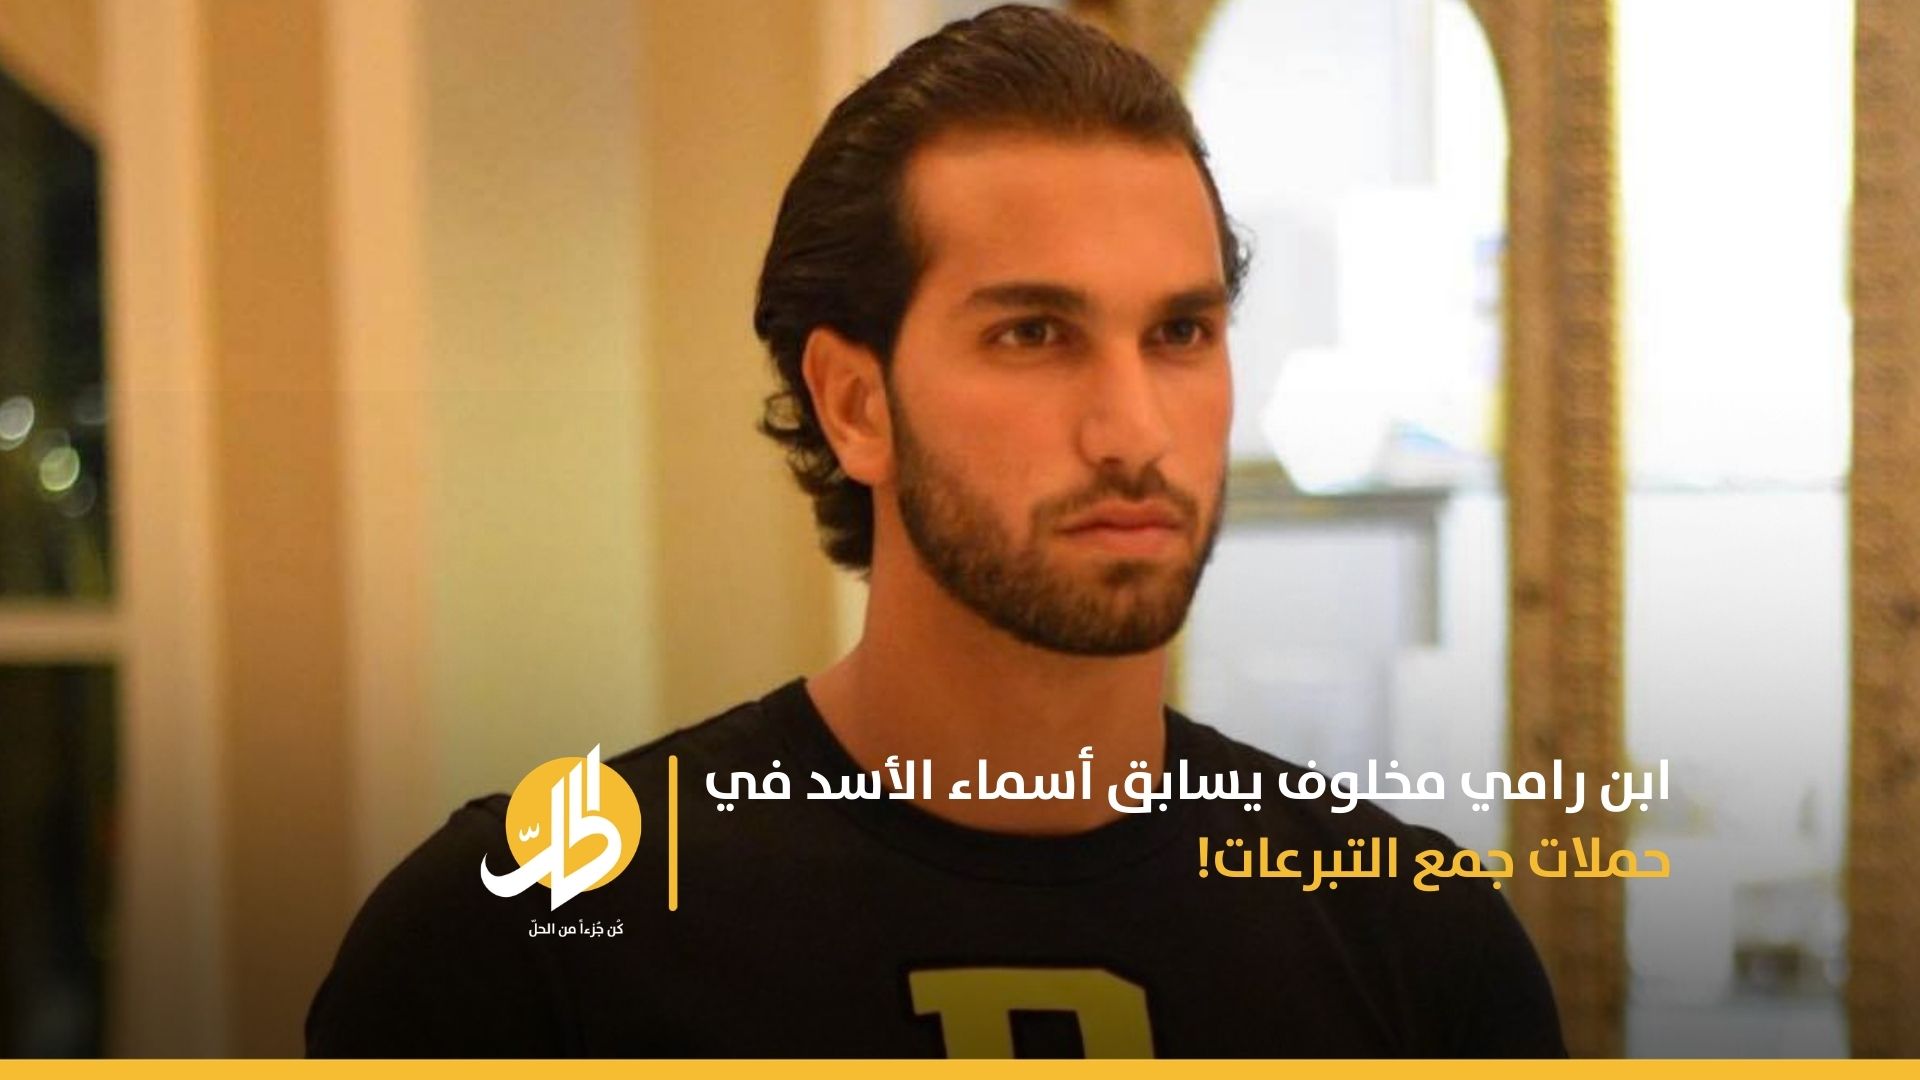 ابن رامي مخلوف يسابق أسماء الأسد في حملات جمع التبرعات!